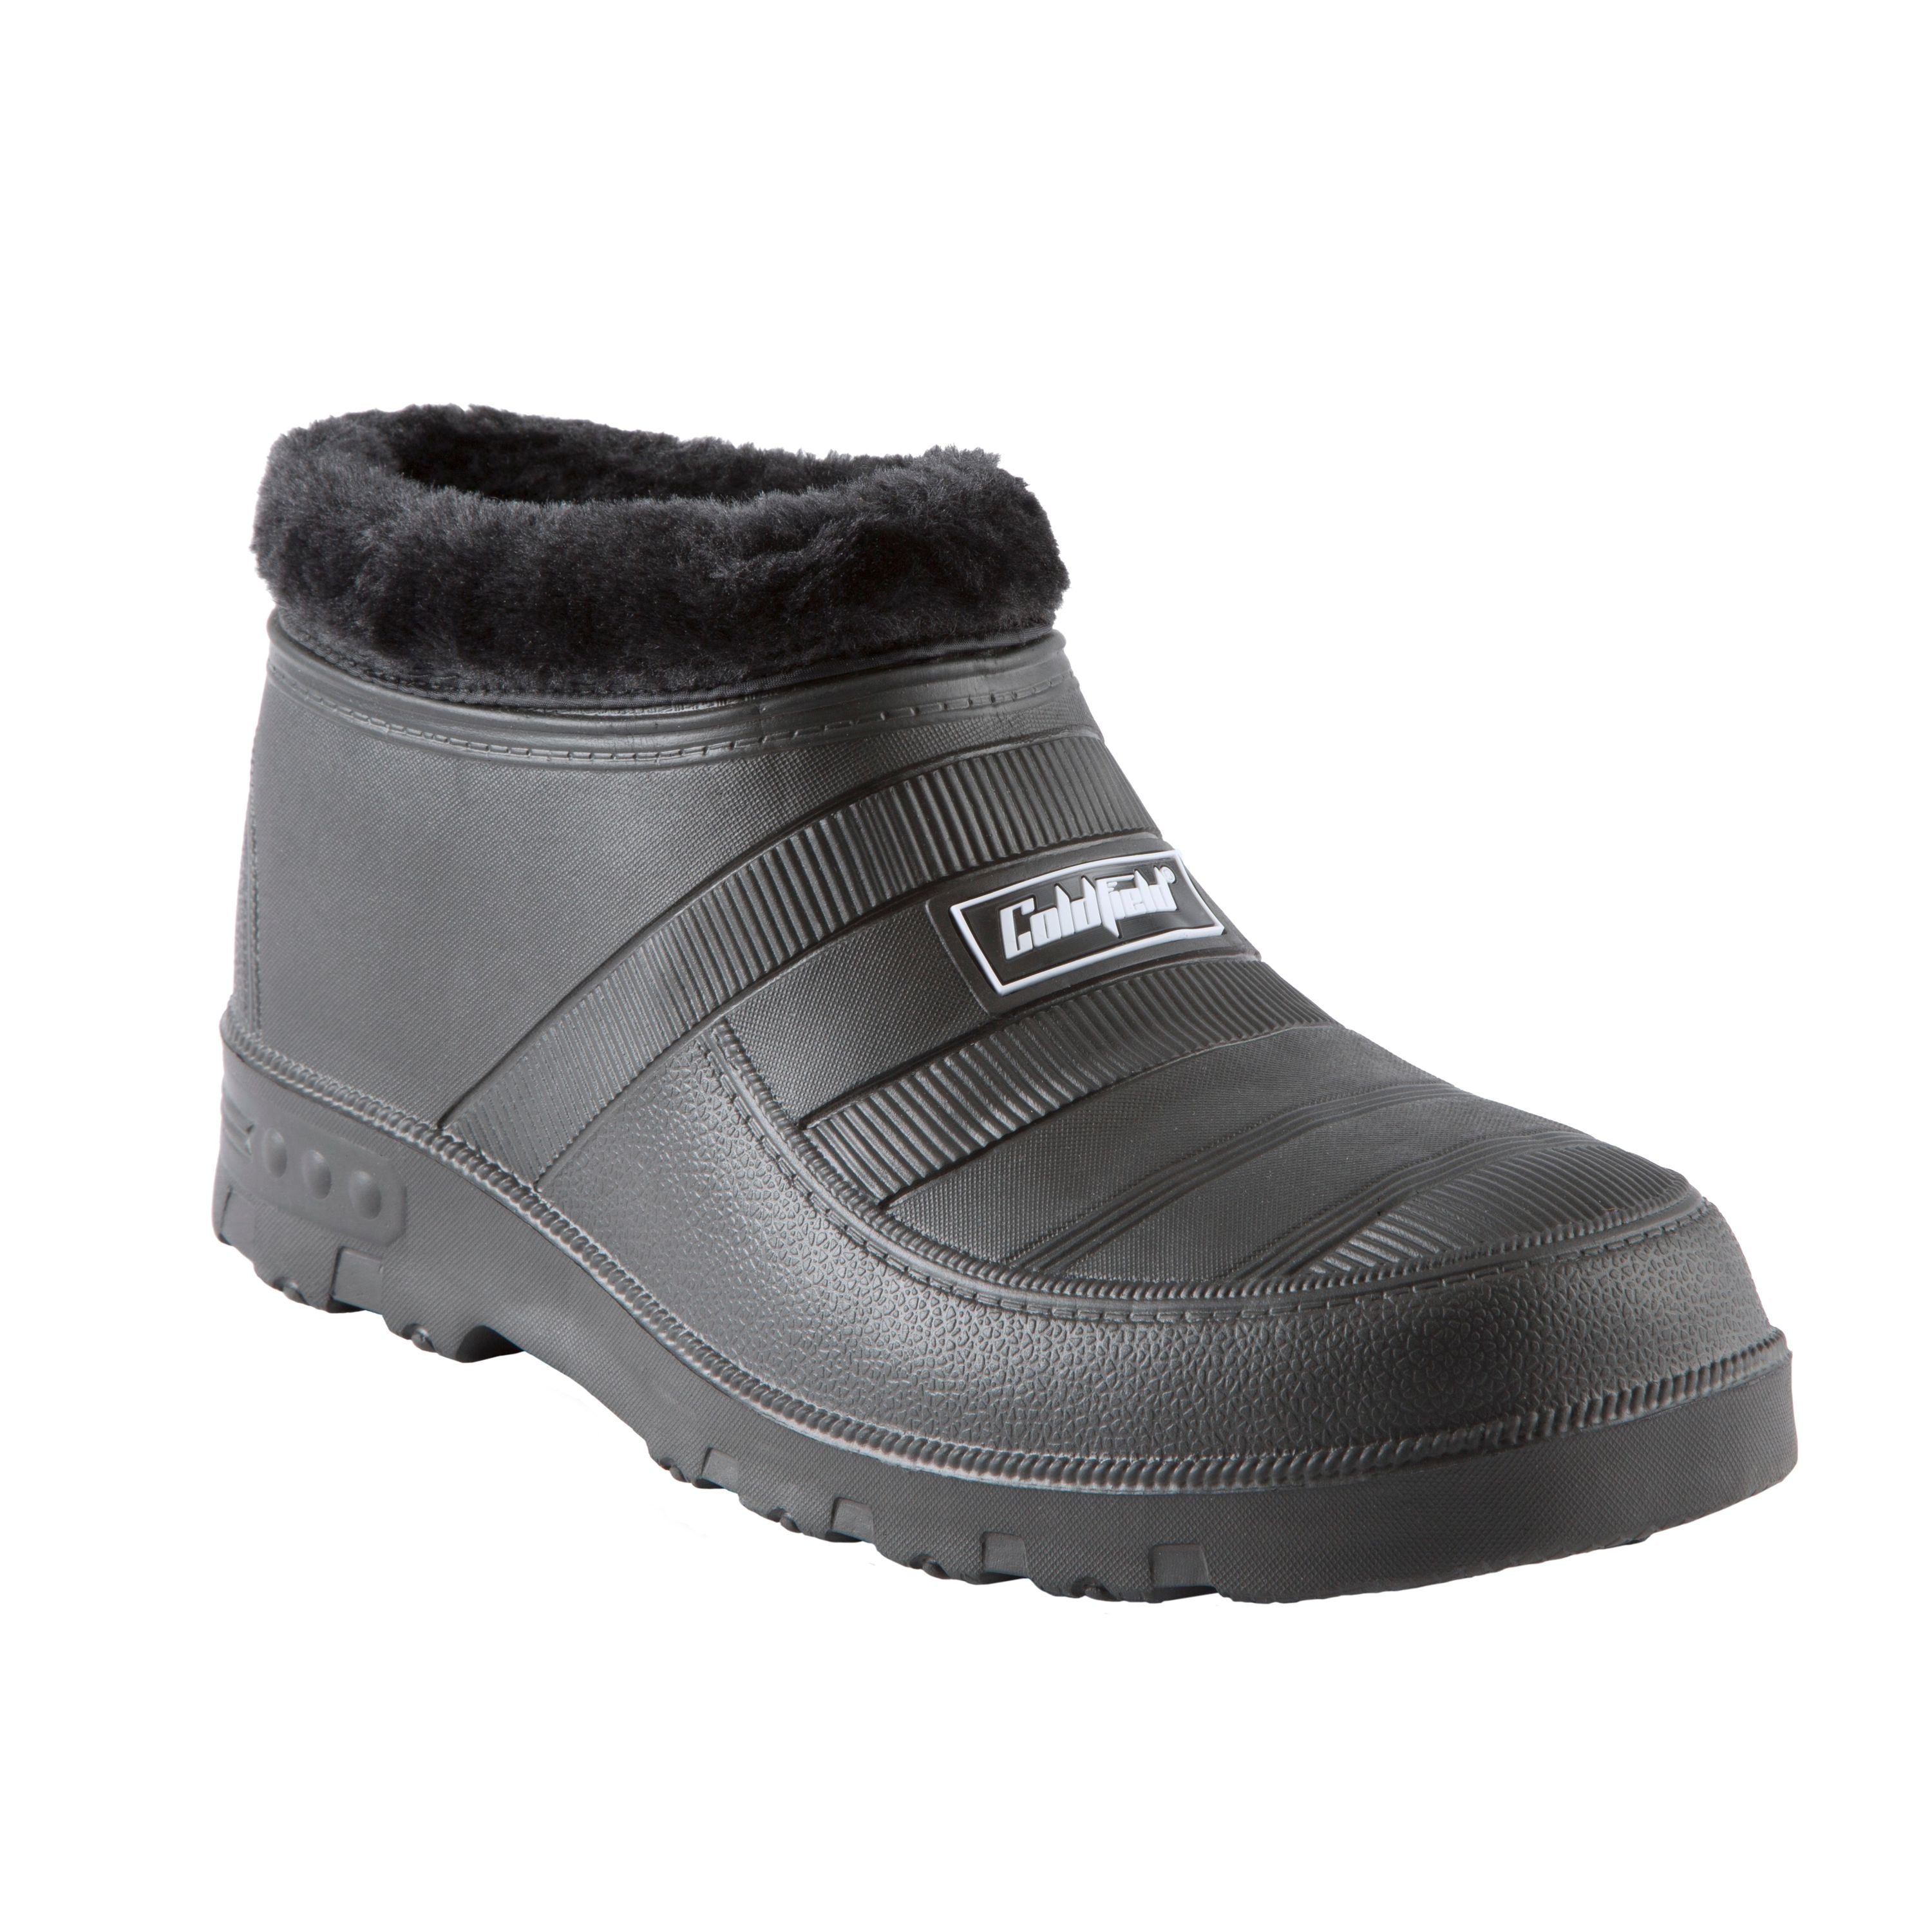 Ultralite insulated slip-on shoes - Men's